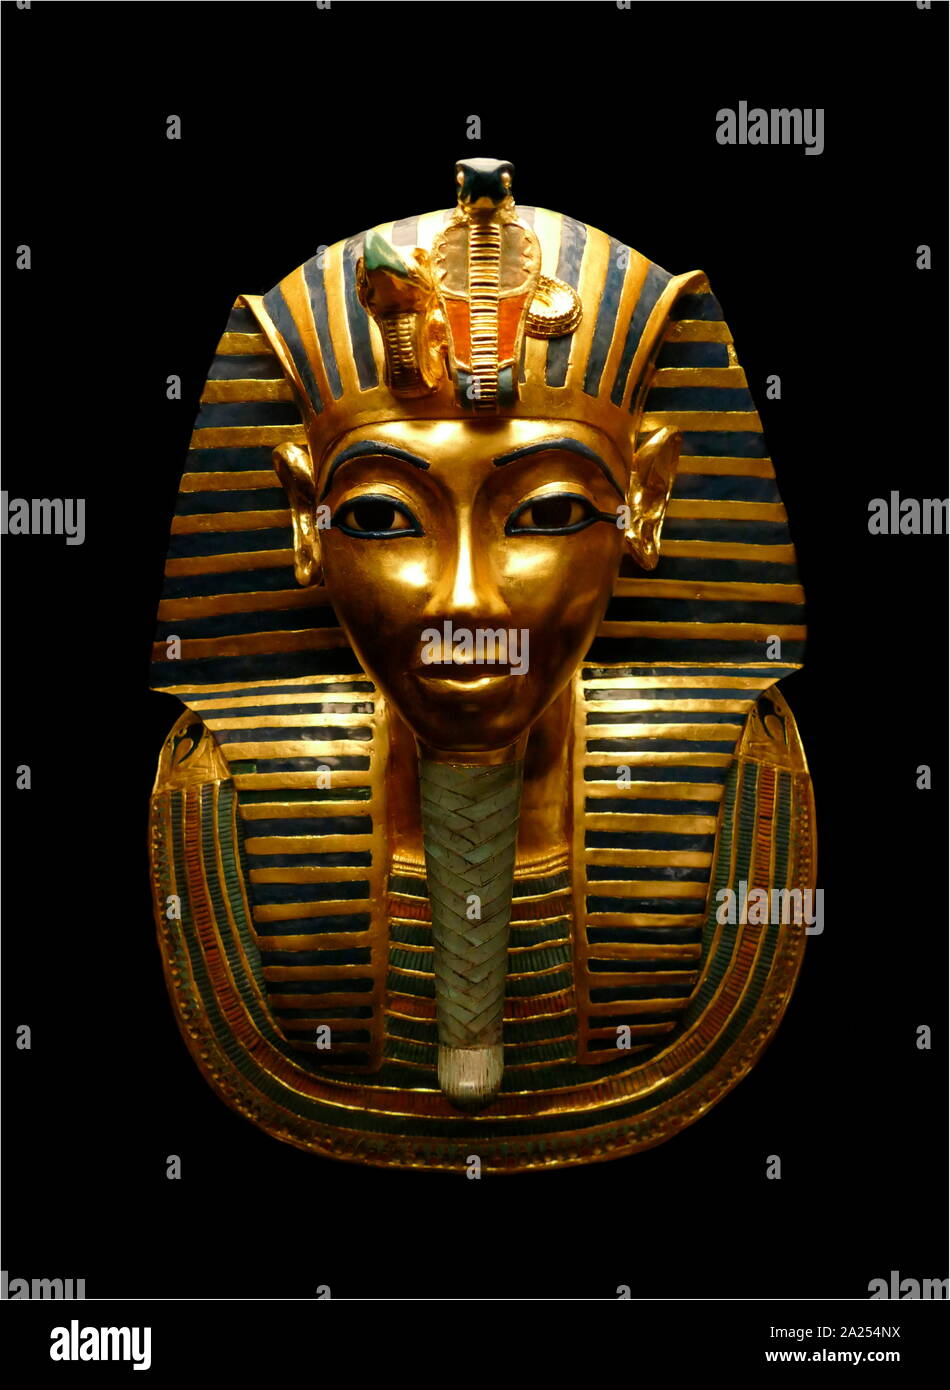 Réplica de la máscara funeraria de Tutankamón. La máscara mortuoria de la  18ª dinastía del antiguo faraón egipcio Tutankamón (reinó 1332-1323 BC).  Fue descubierta en 1925 por Howard Carter en la tumba